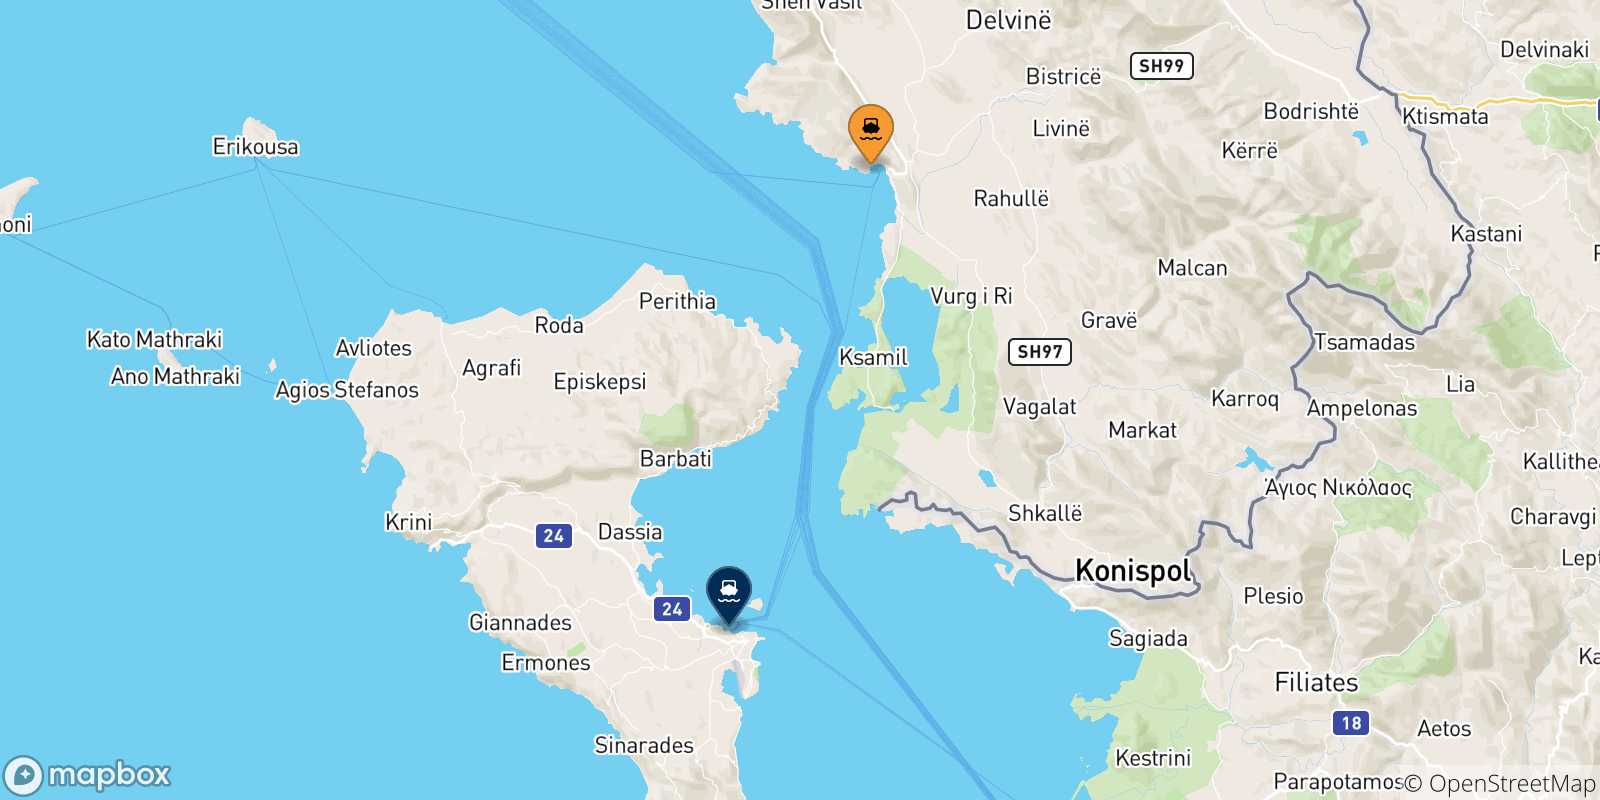 Mappa delle possibili rotte tra l'Albania e Corfu